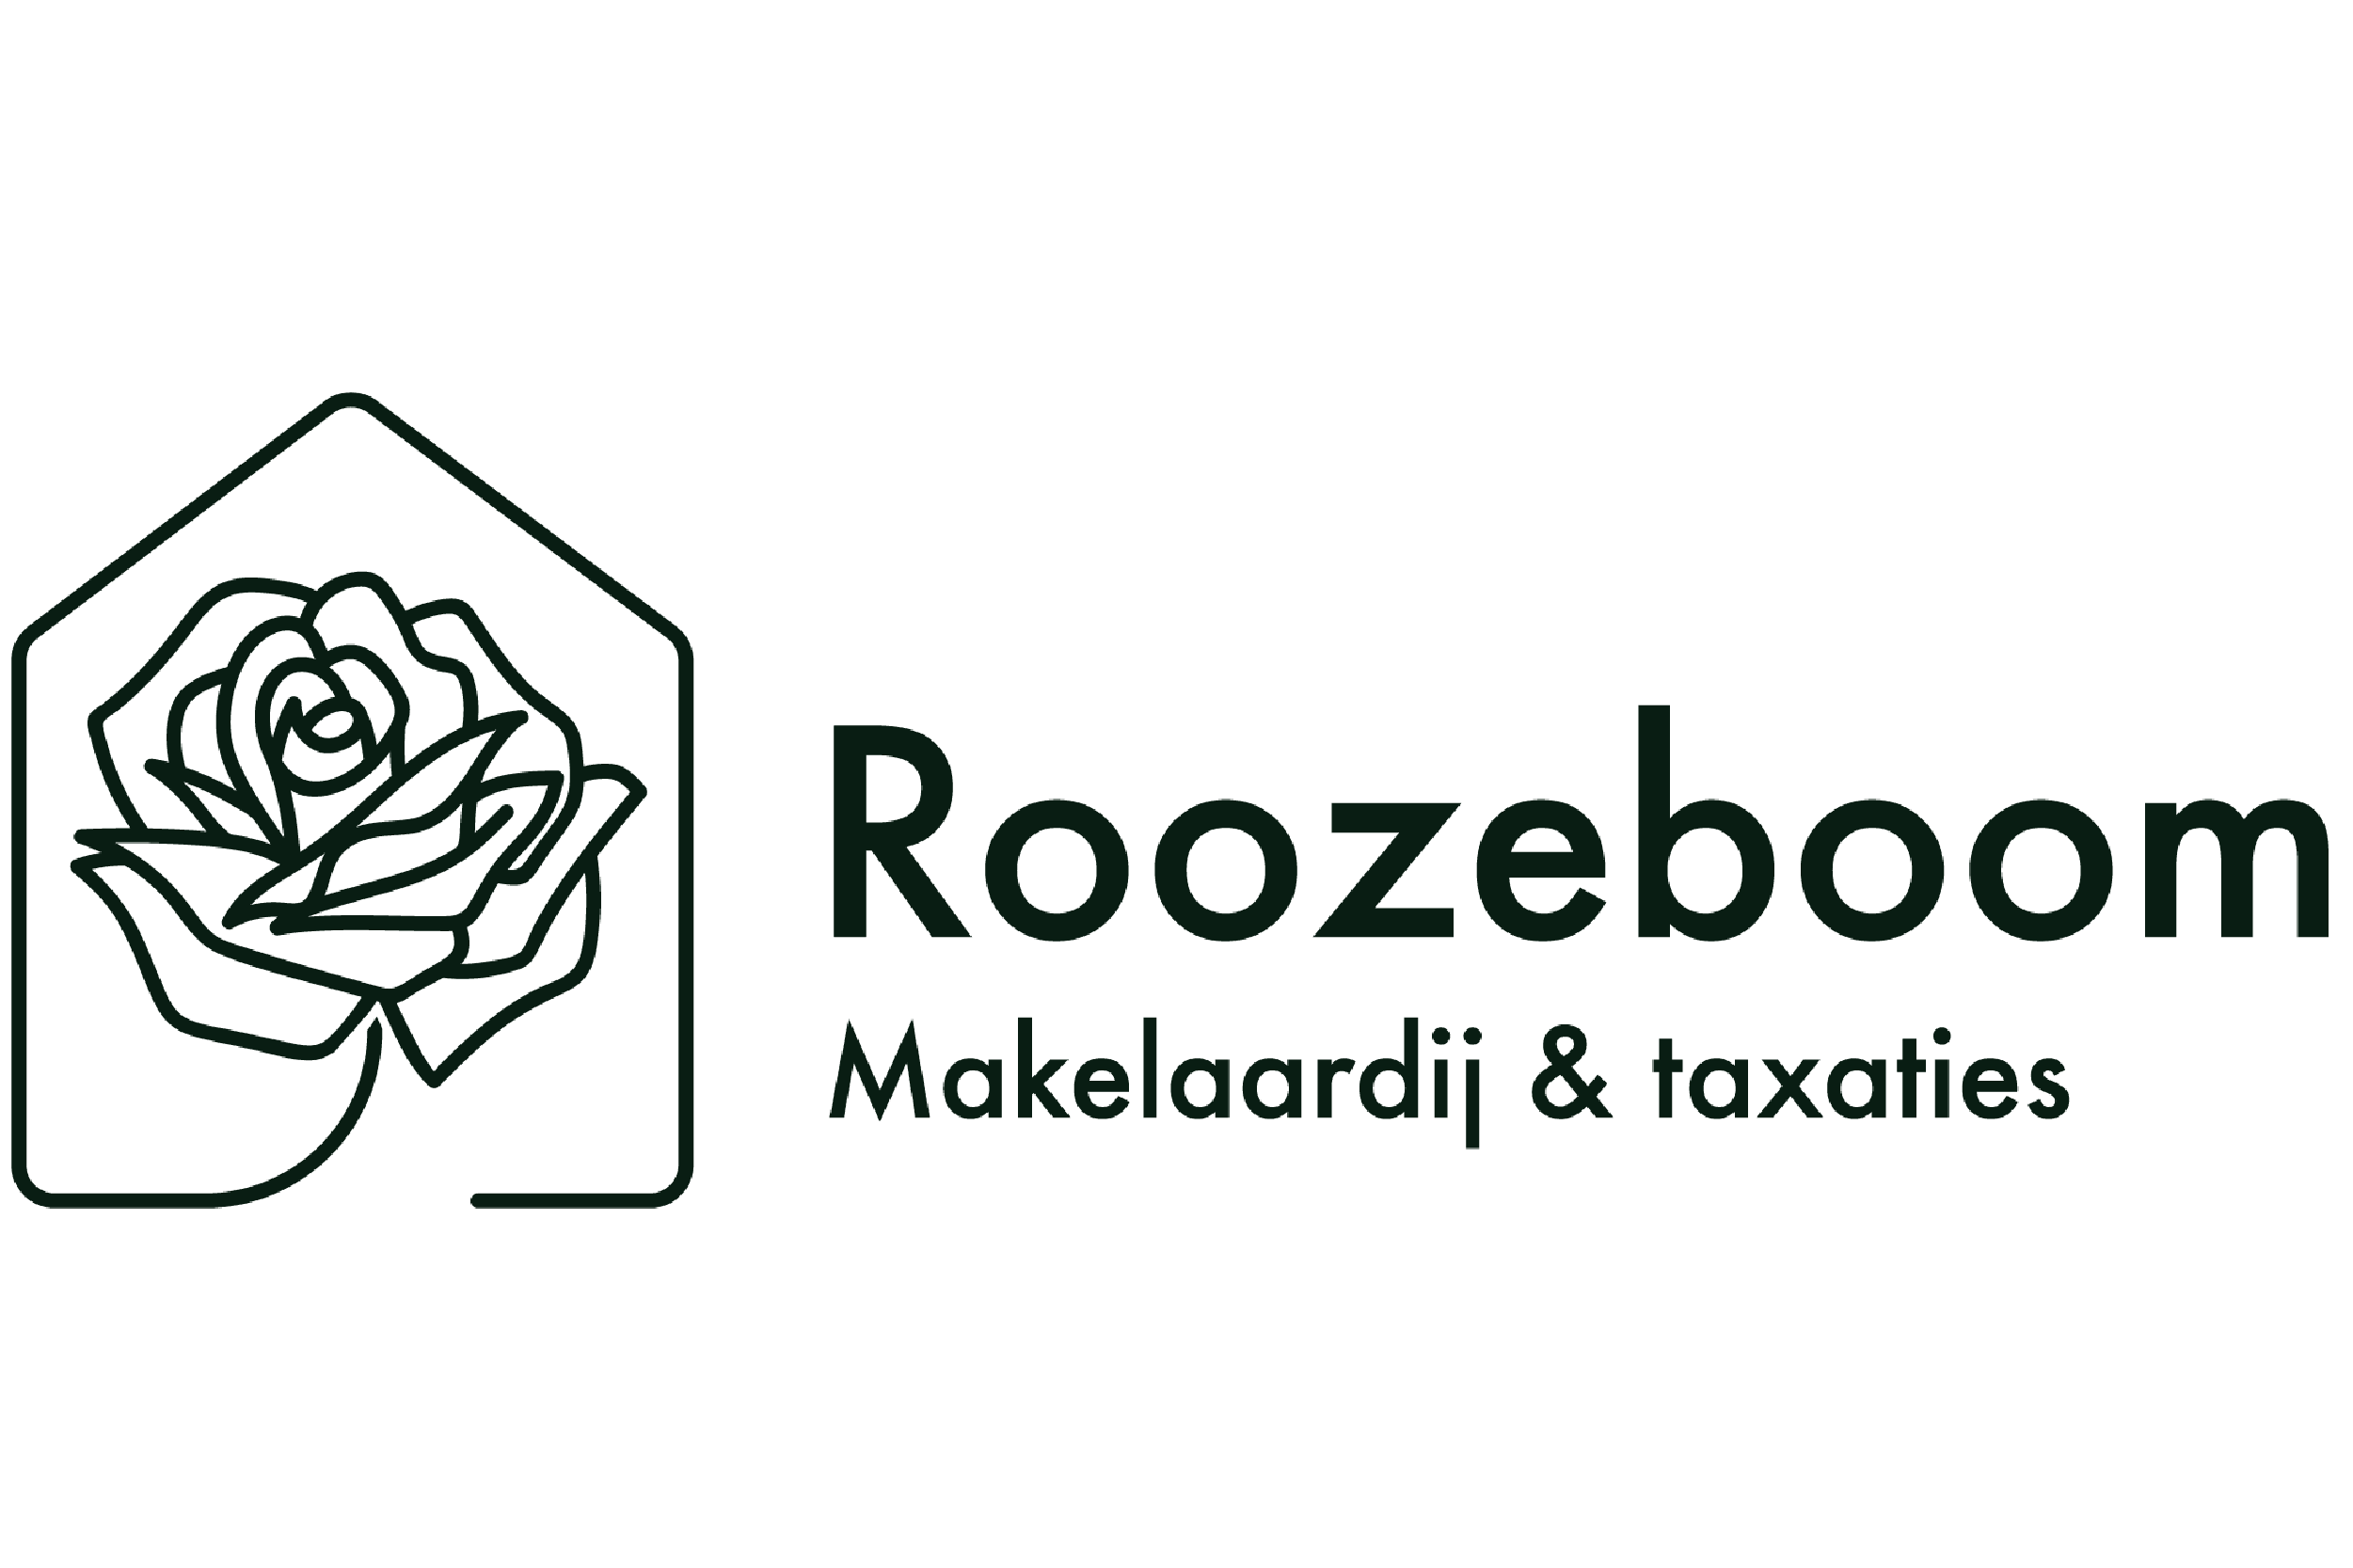 Het logo van Roozeboom Makelaardij